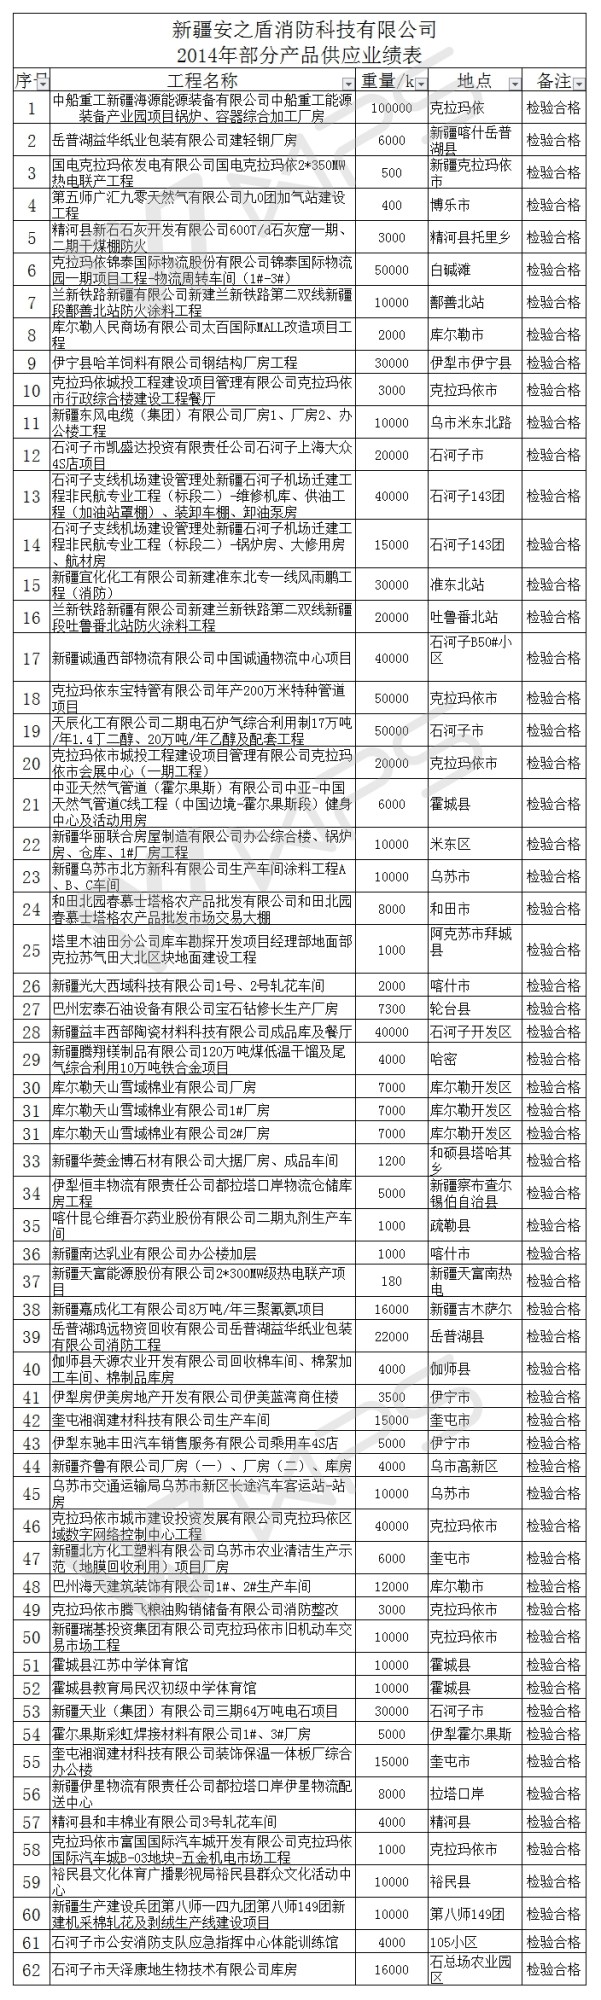 新疆安之盾消防科技有限公司 2014年部分产品供应业绩表